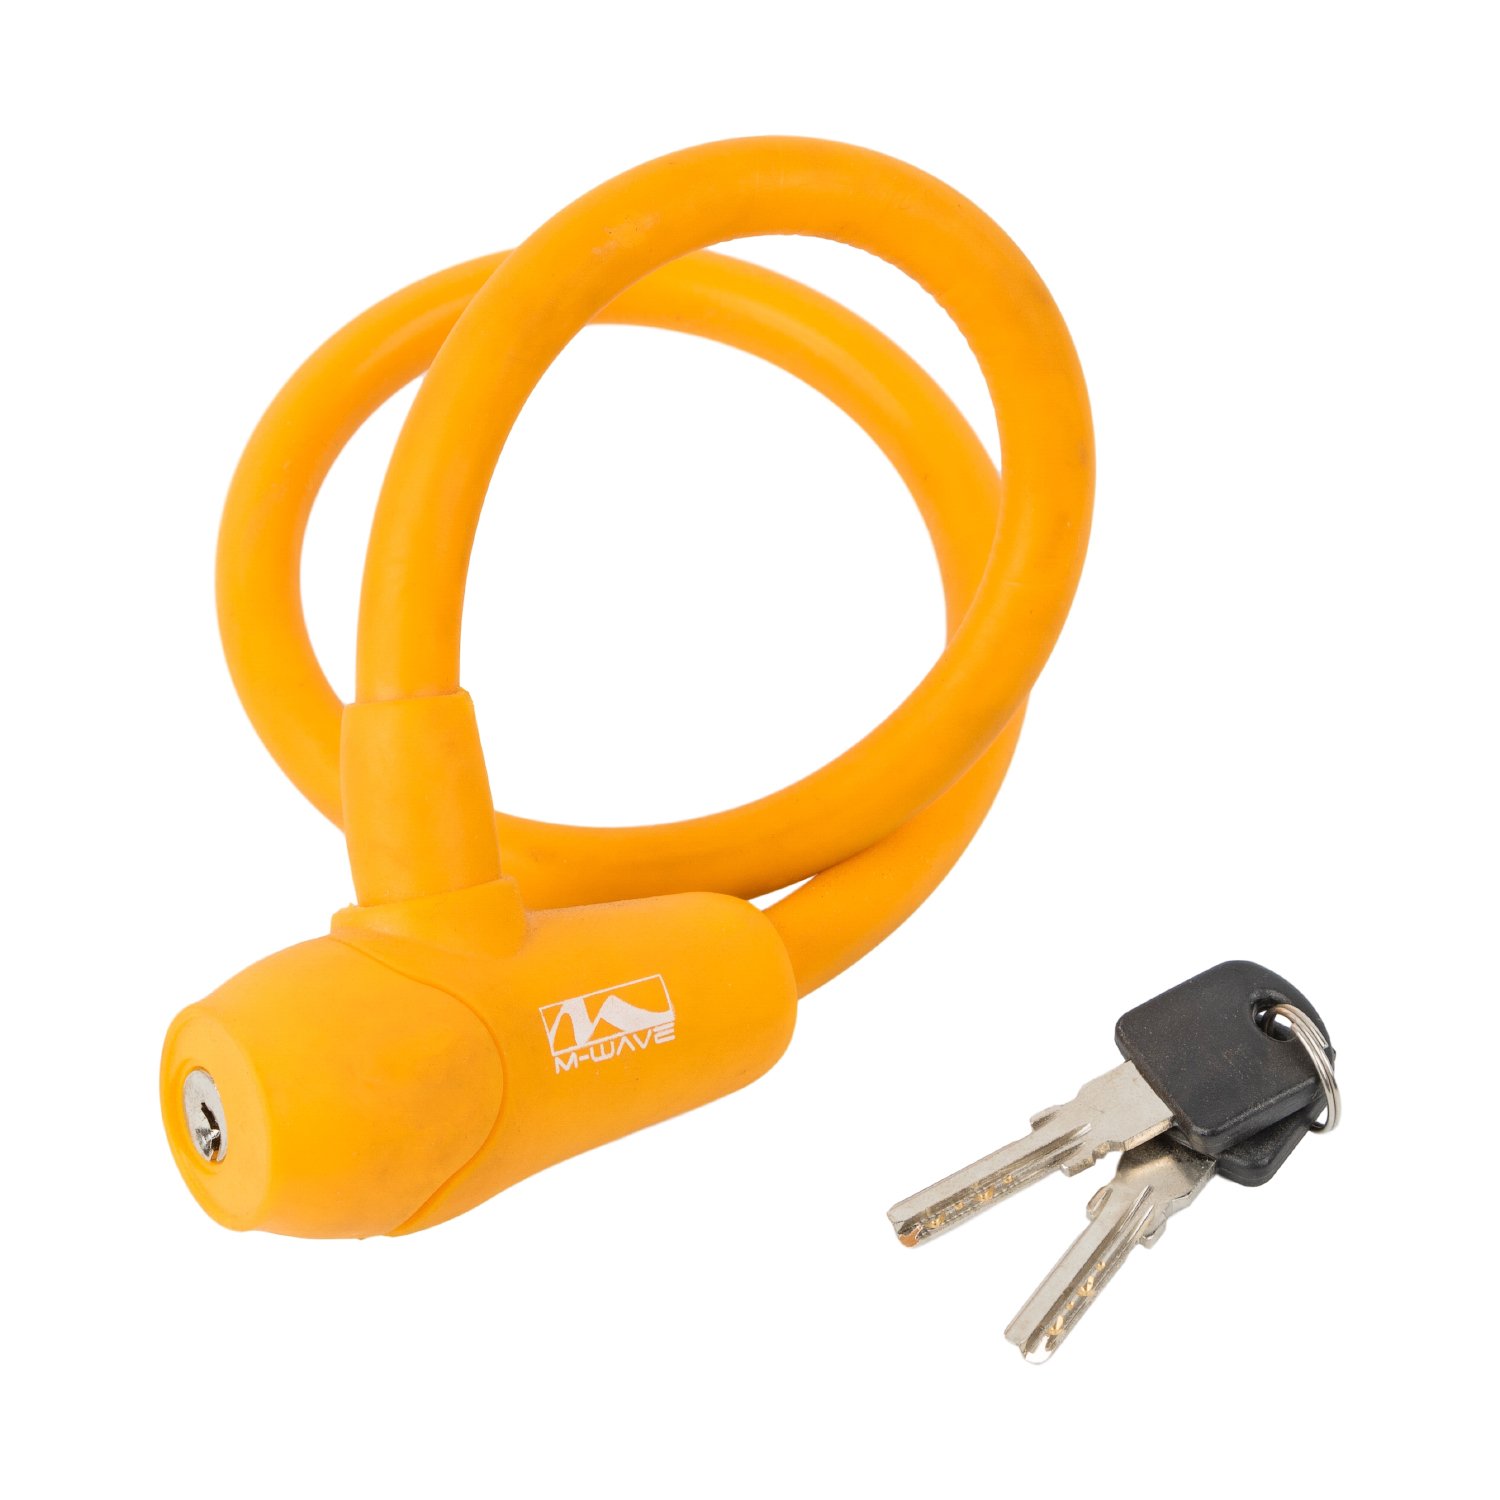 Велосипедный замок M-WAVE, тросовый, на ключ, 12 х 600 мм, оранжевый, 5-231047 велосипедный замок abus 1500 цепь на ключ 600 х 4 оранжевый 569203 abus